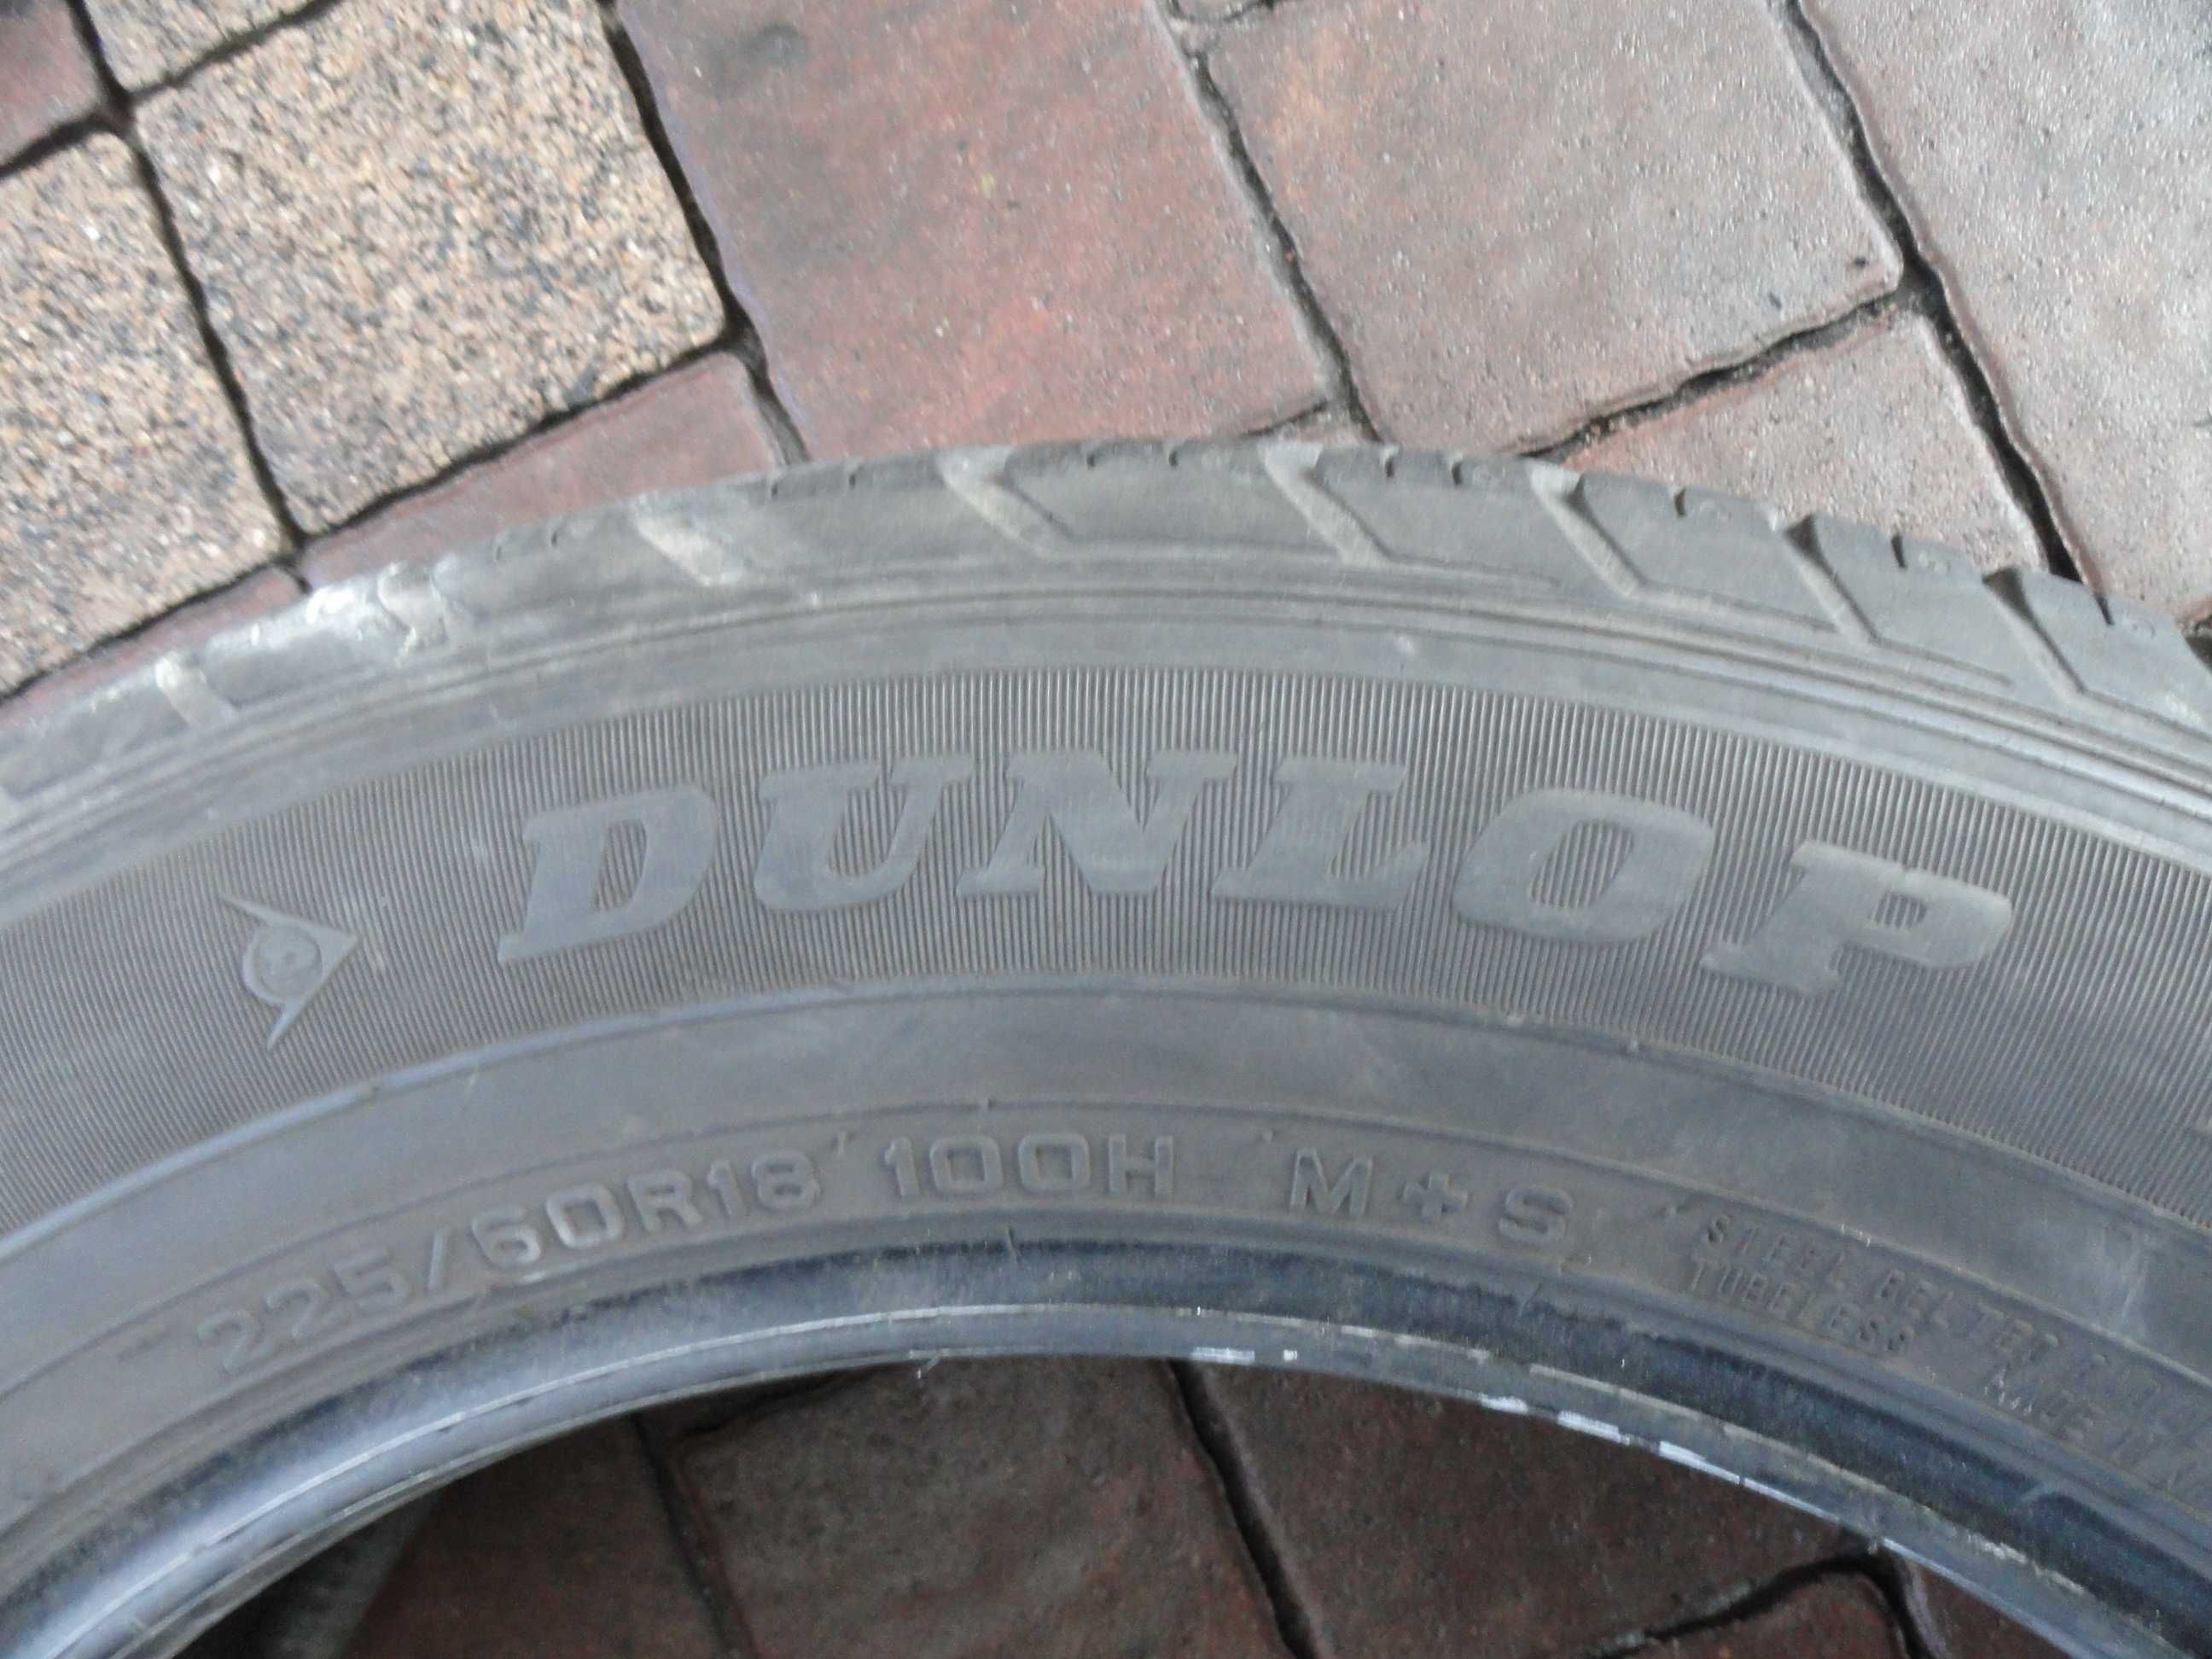 225/60R18 Dunlop Komplet 4 sztuki LATO